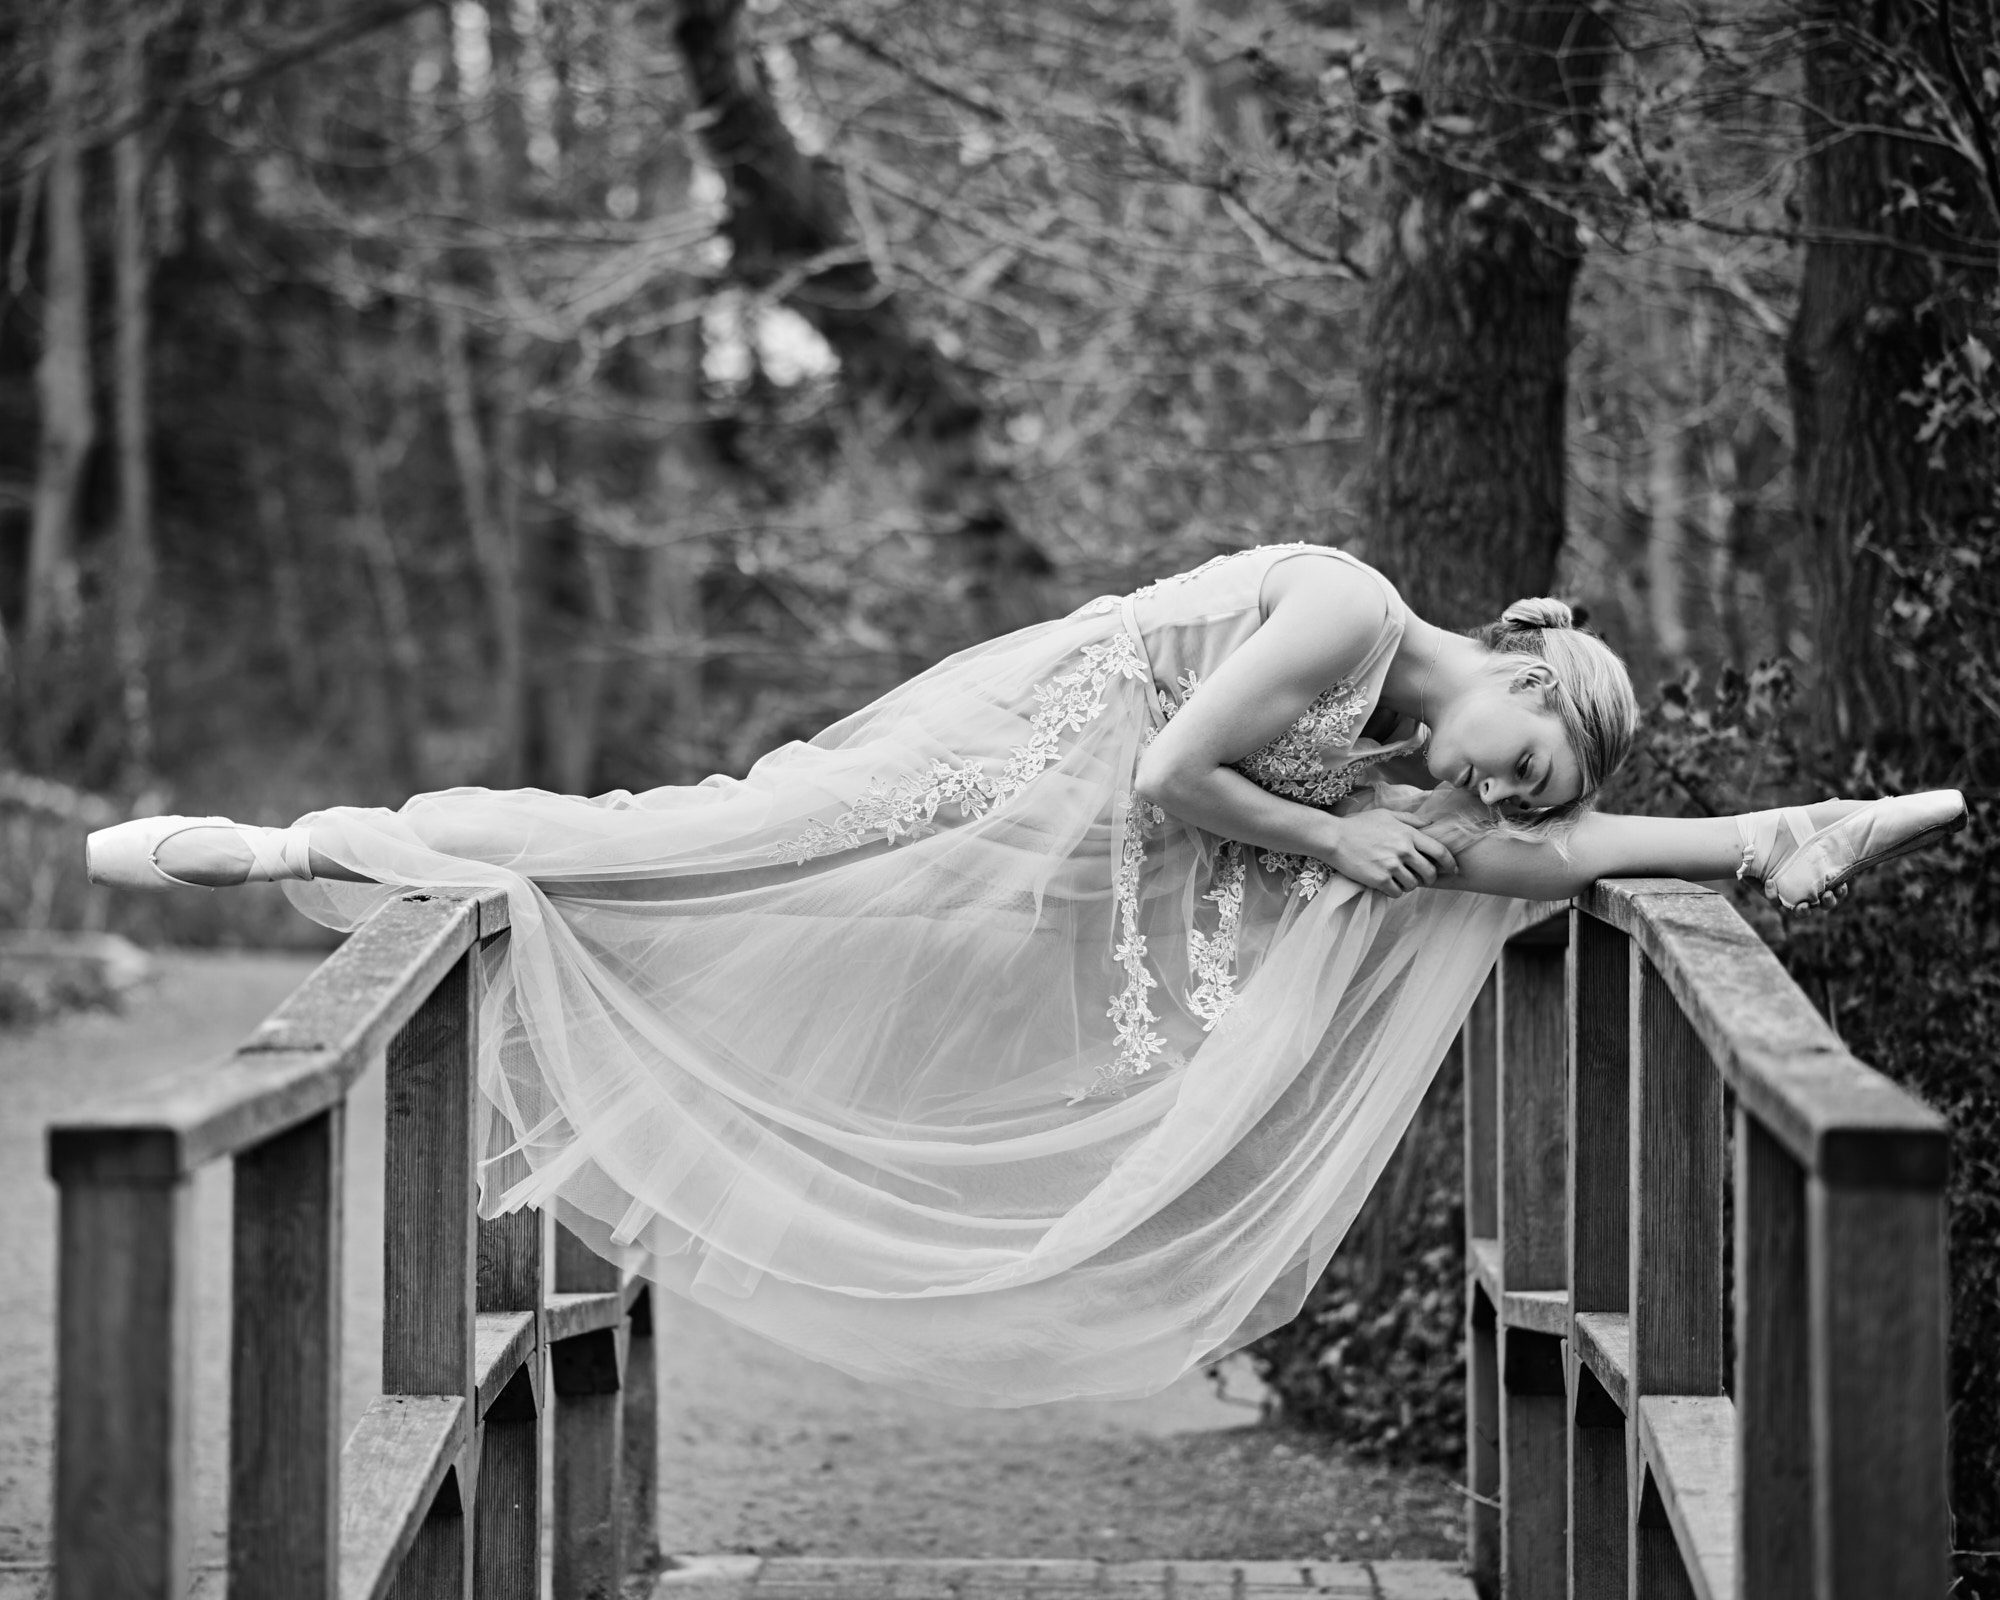 Ballet dancer doing the splits on a bridge